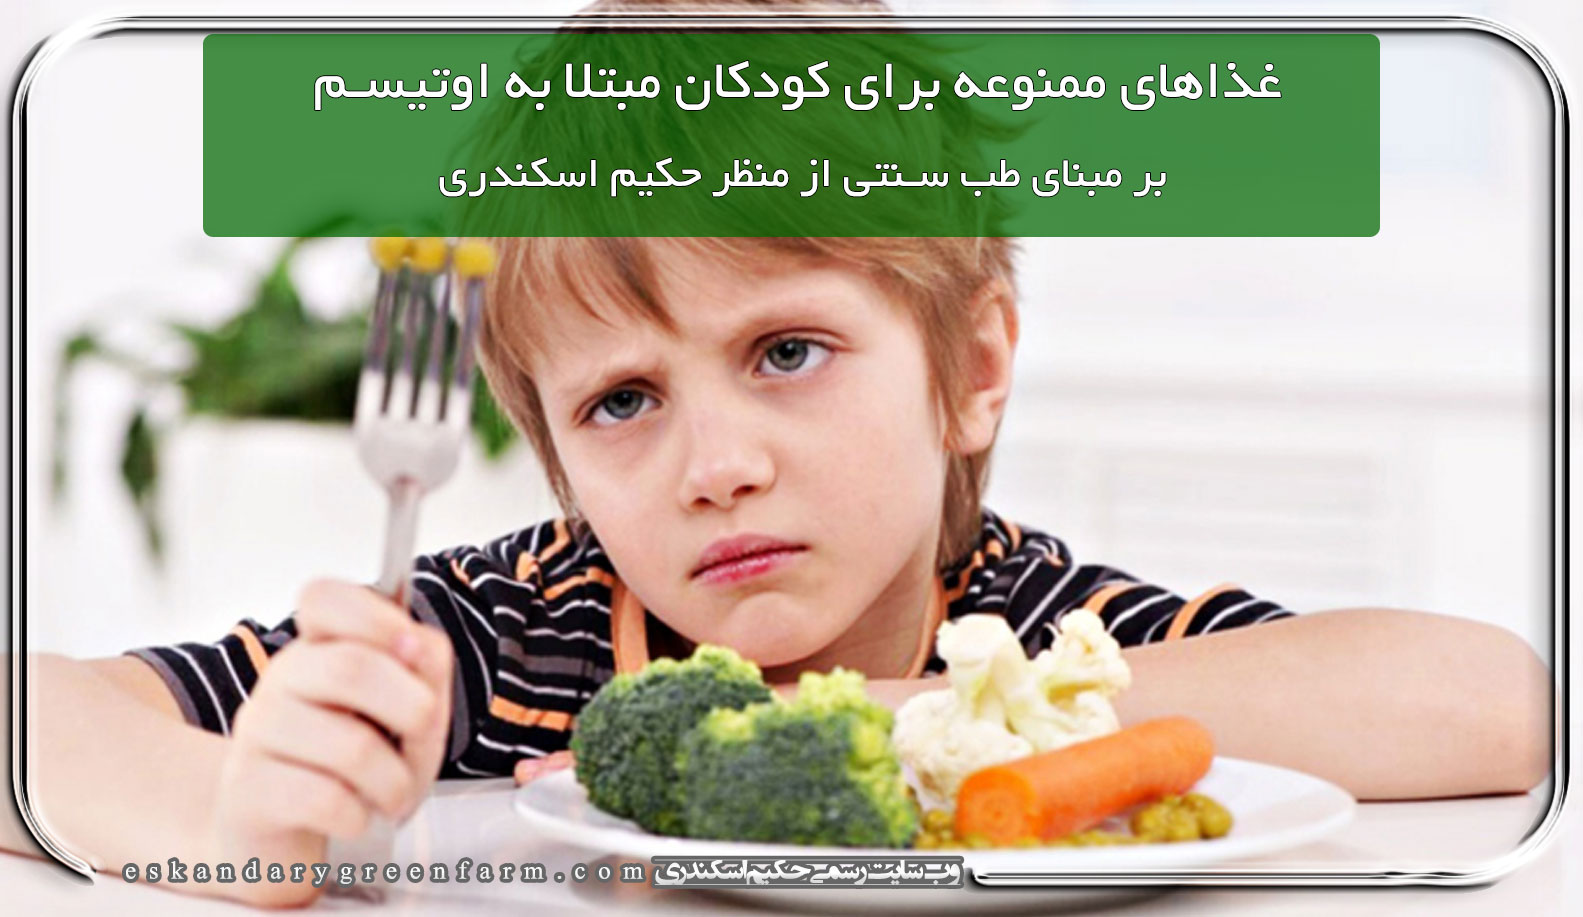 غذاهای ممنوعه برای کودکان مبتلا به اوتیسم